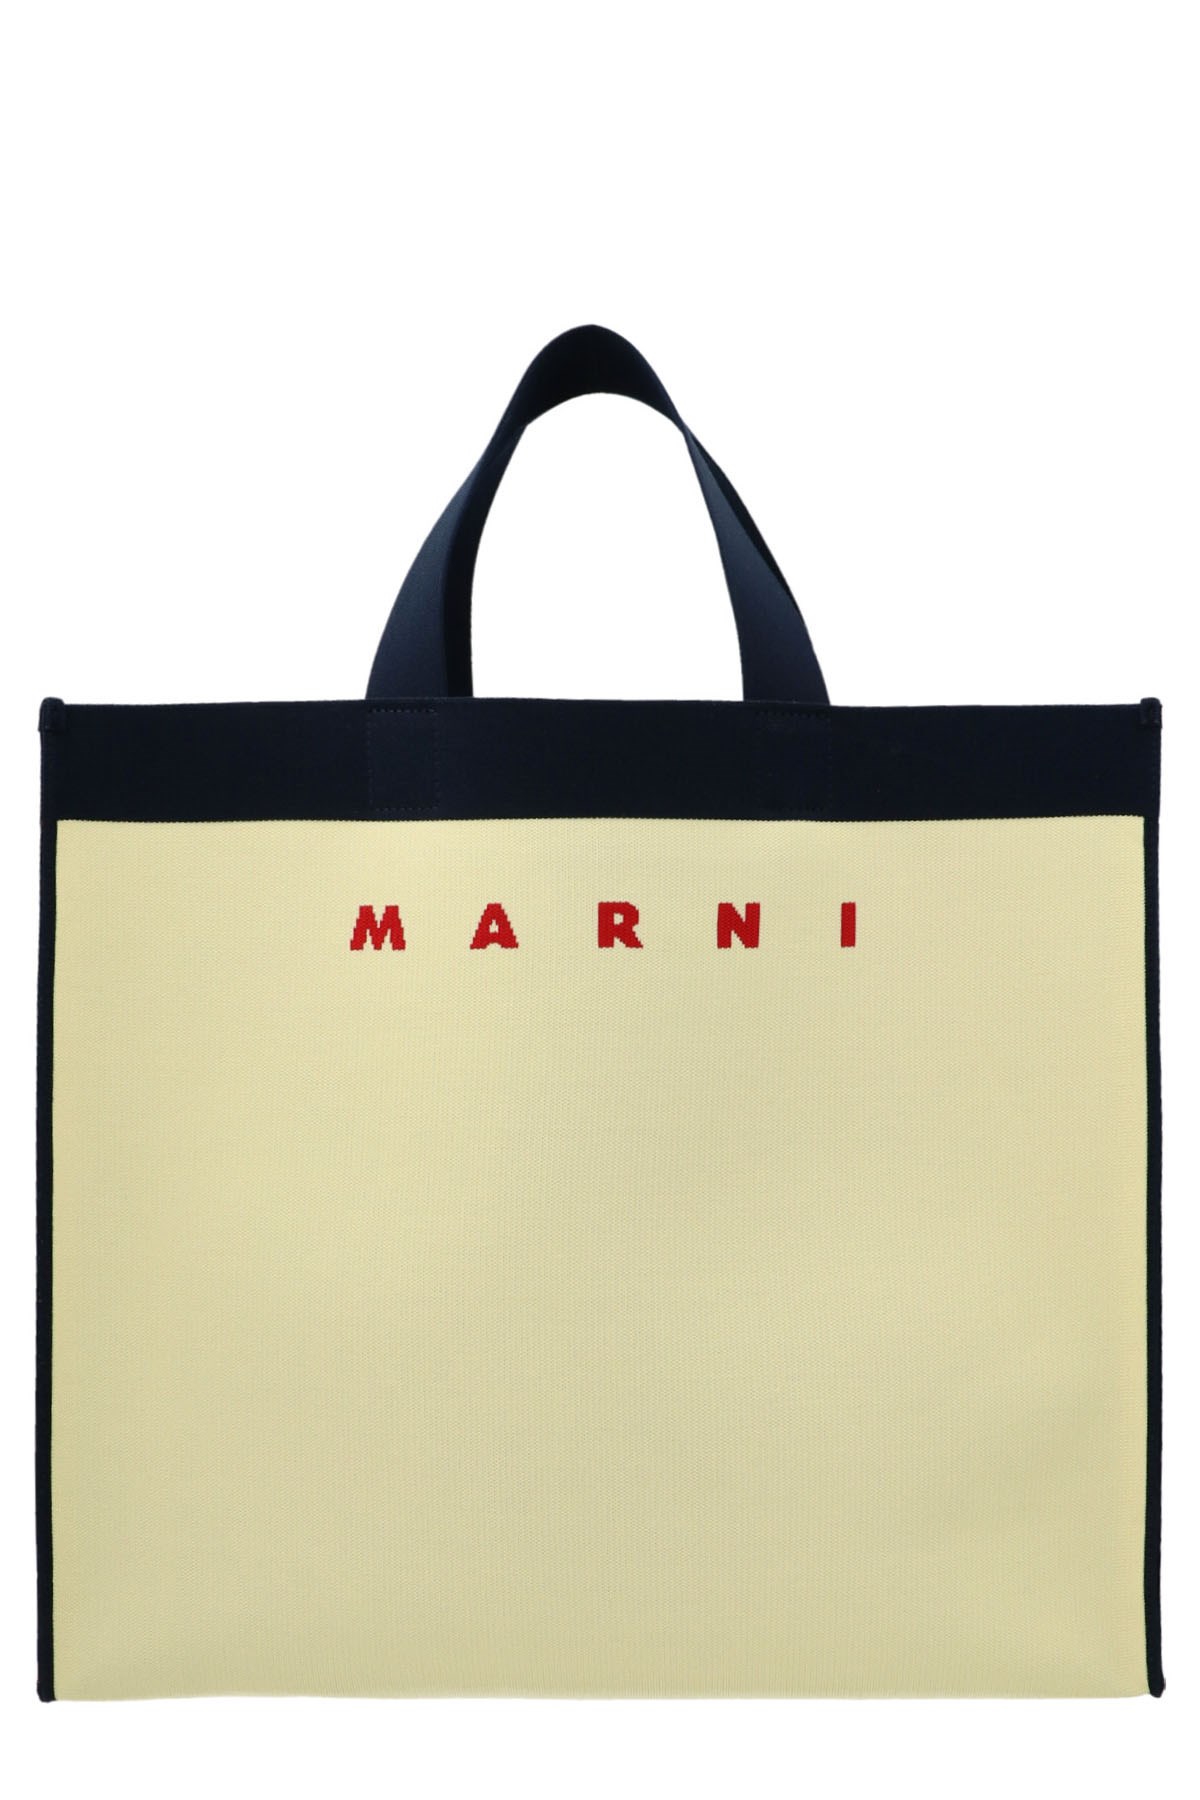 MARNI Two-Color Shopping Bag